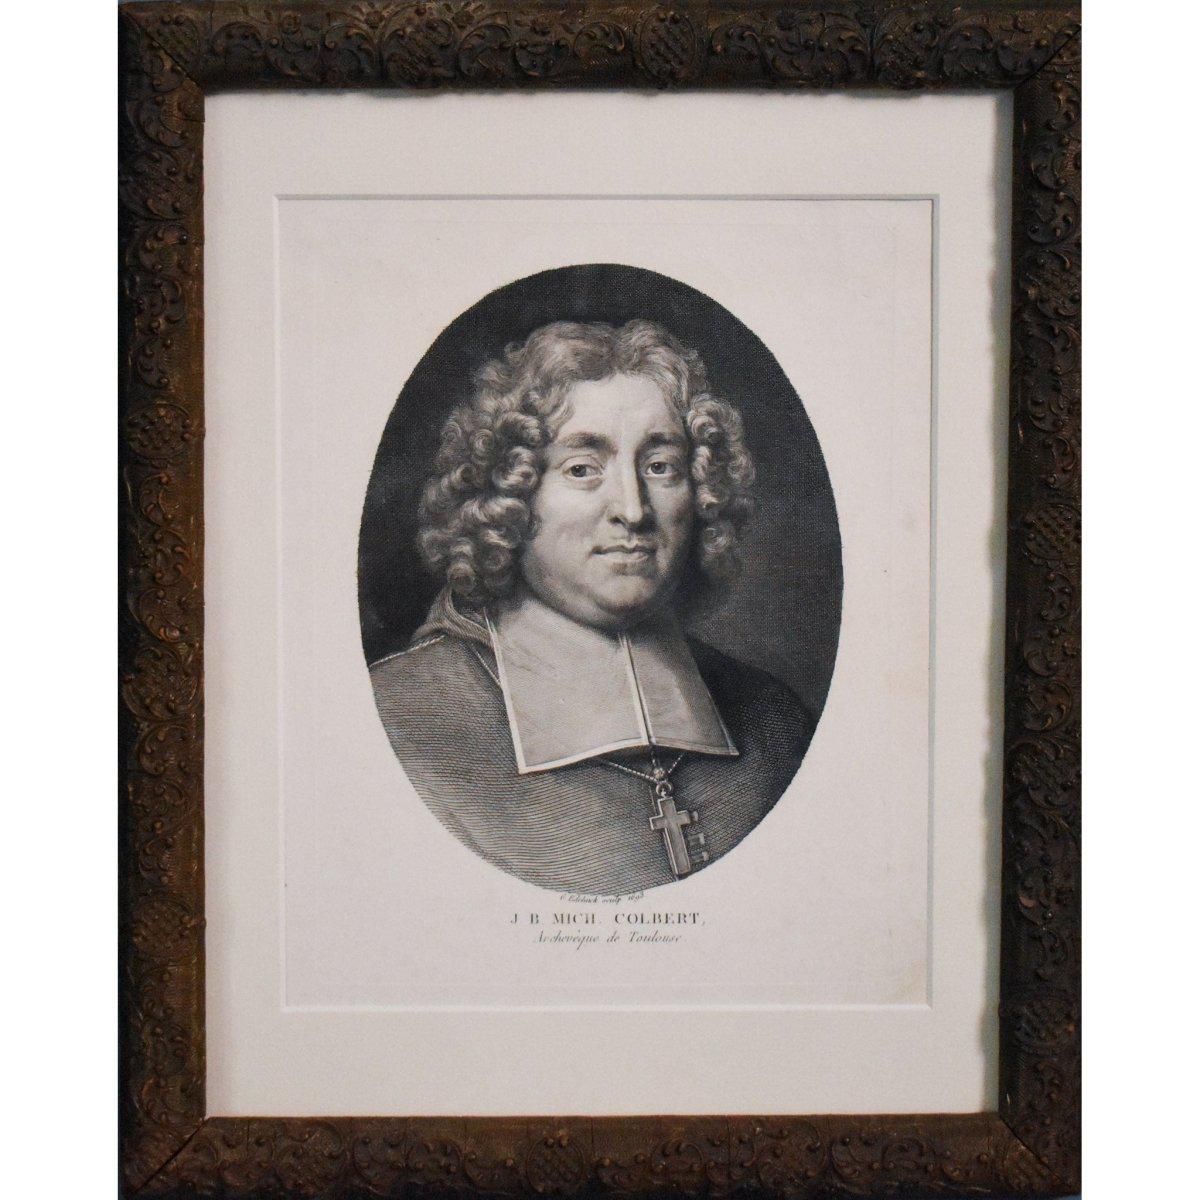 Gérard Edelinck (1640-1707)